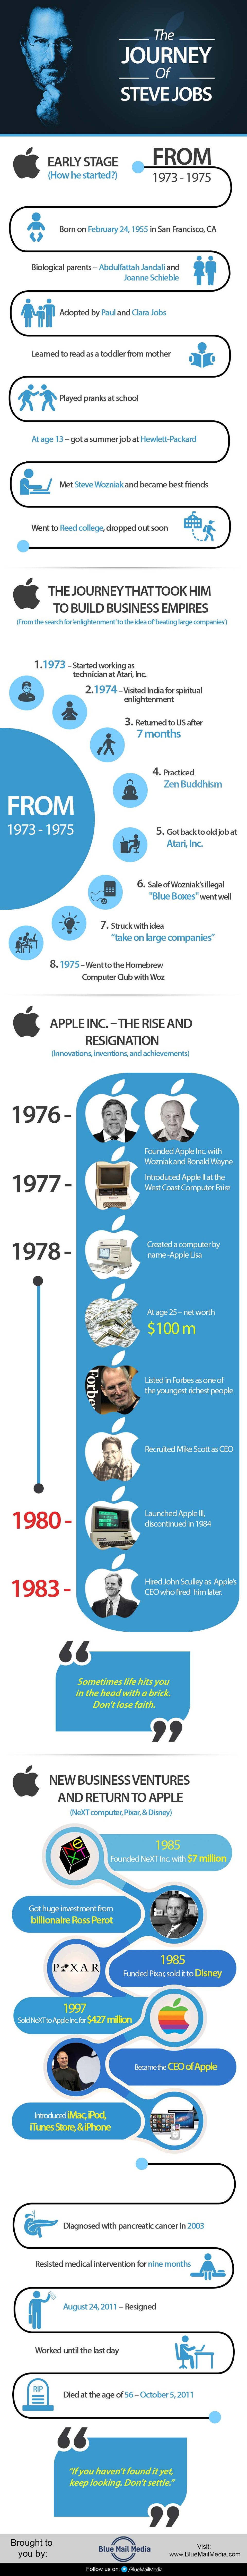 The Journey of Steve Jobs